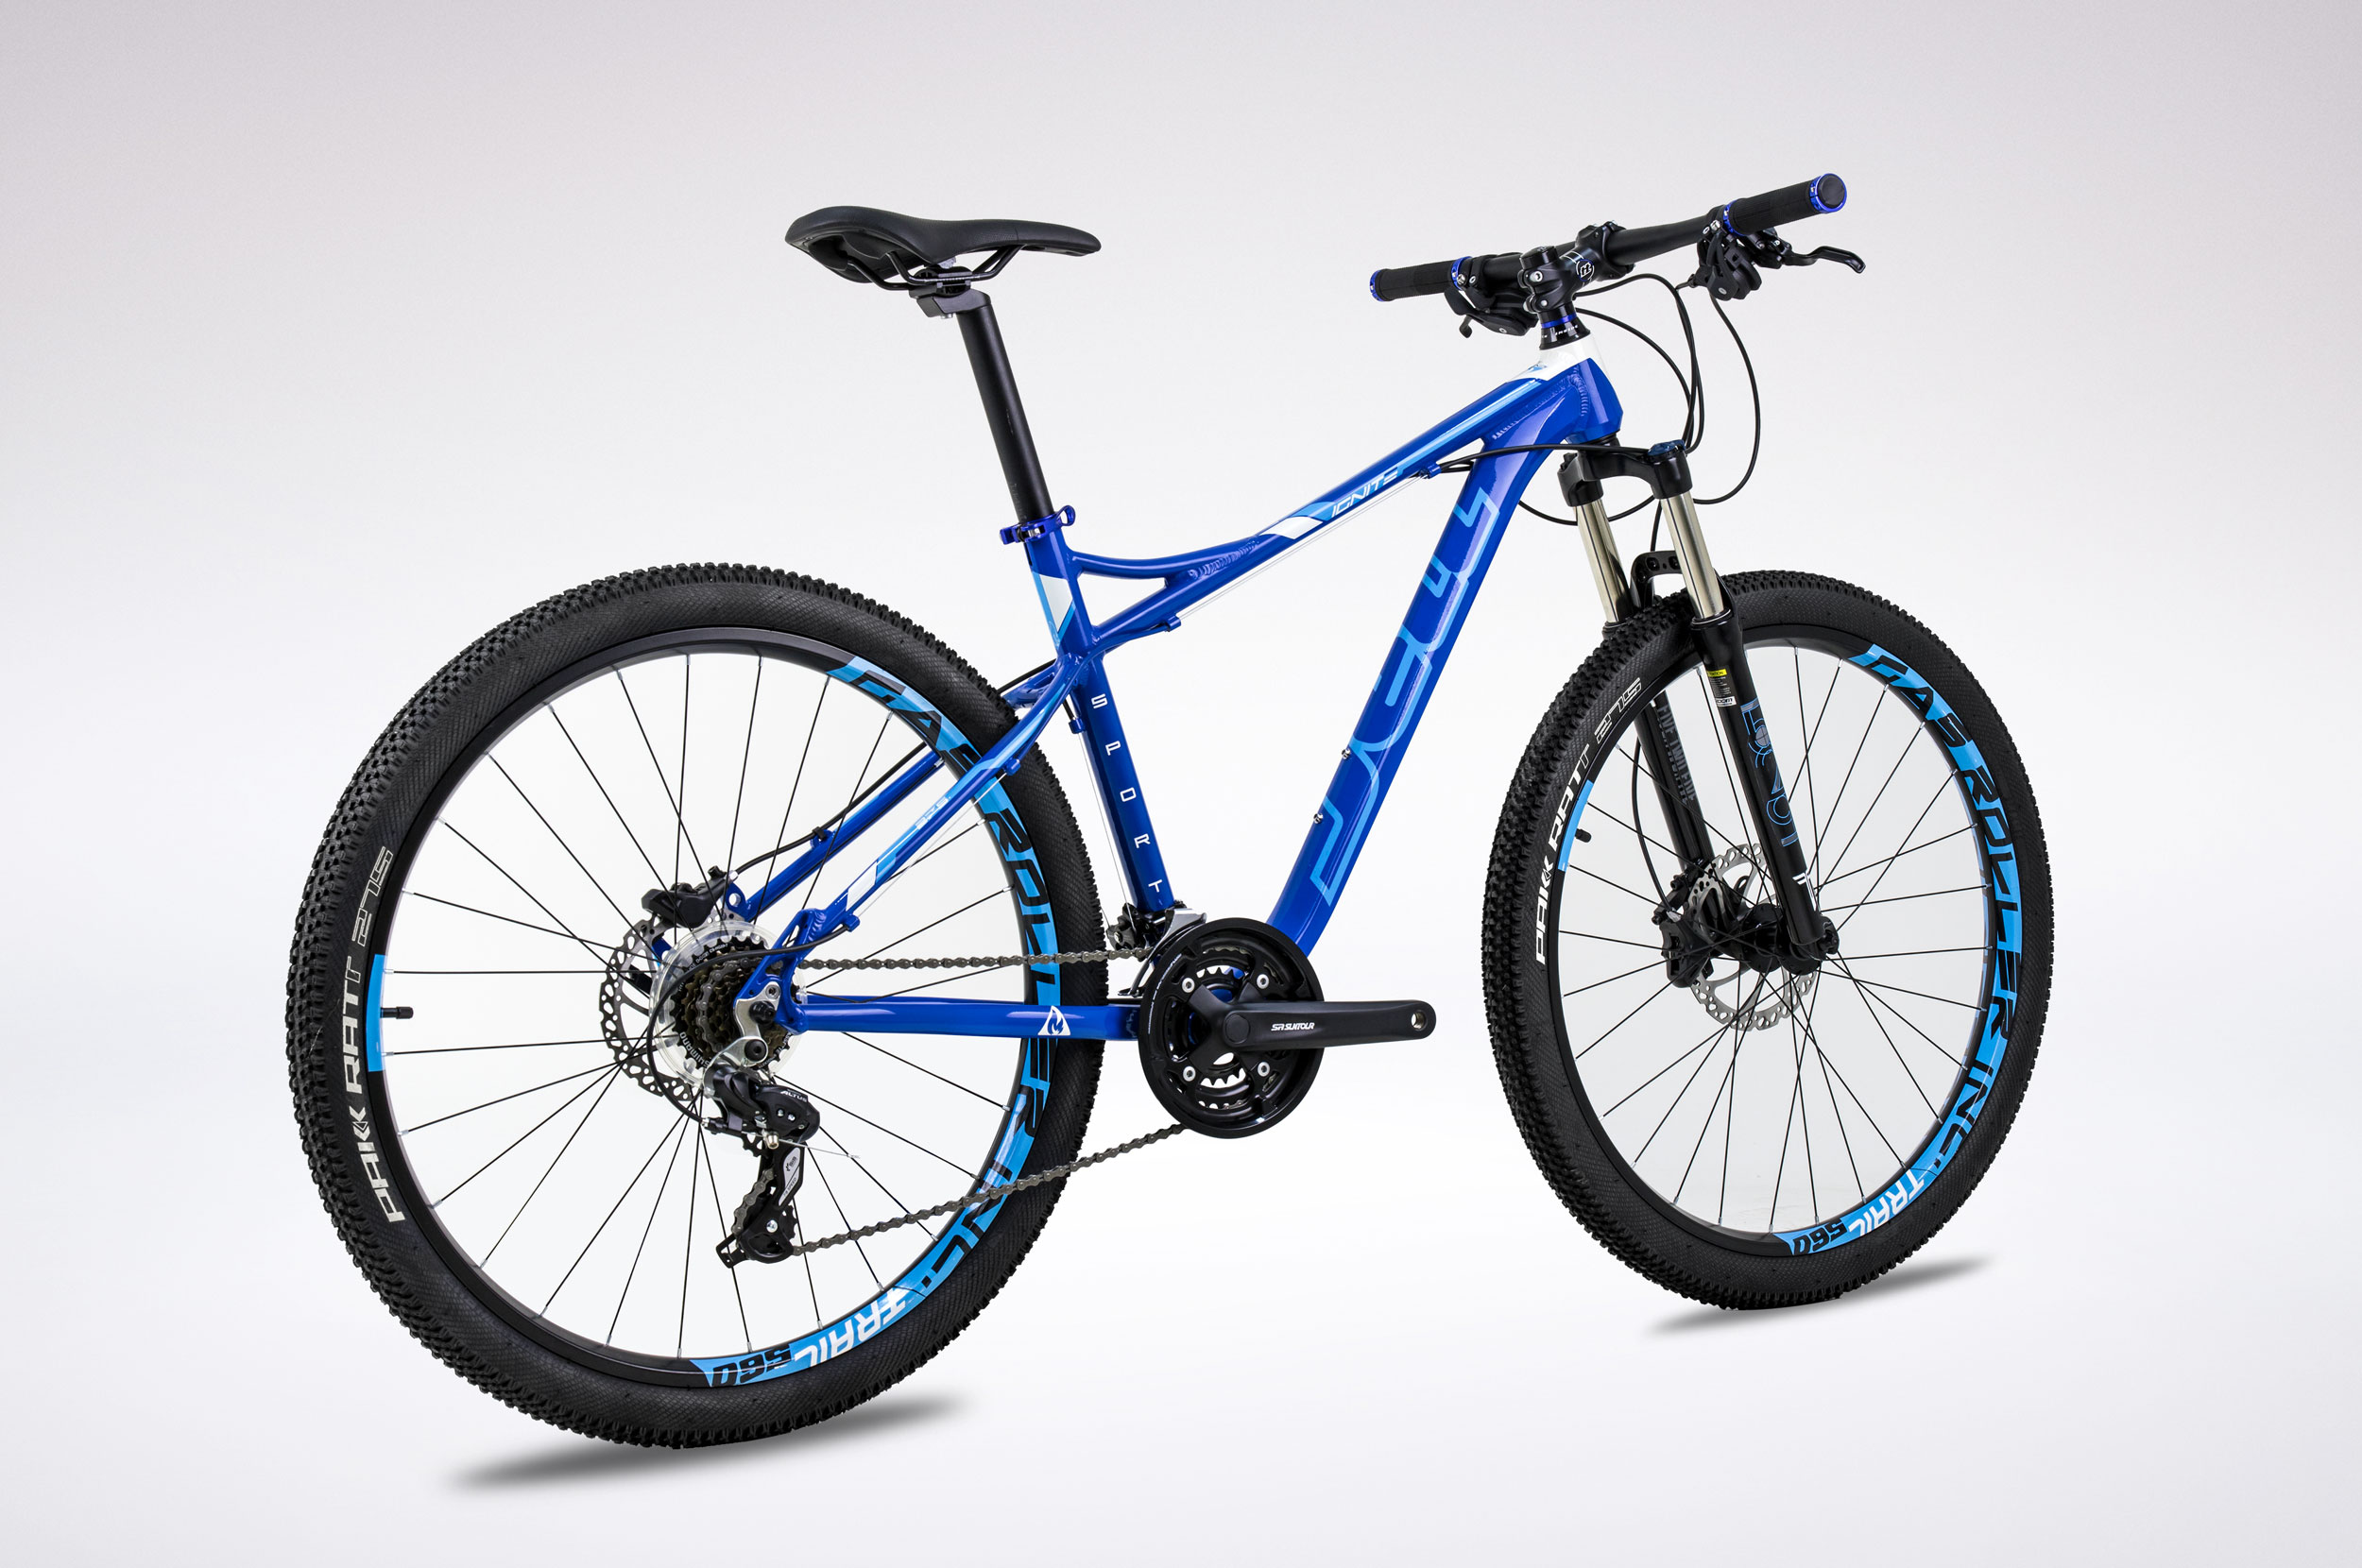 Toan Thang Cycles - Shopxedap - Xe đạp địa hình Jett Ignite Sport Blue 2016